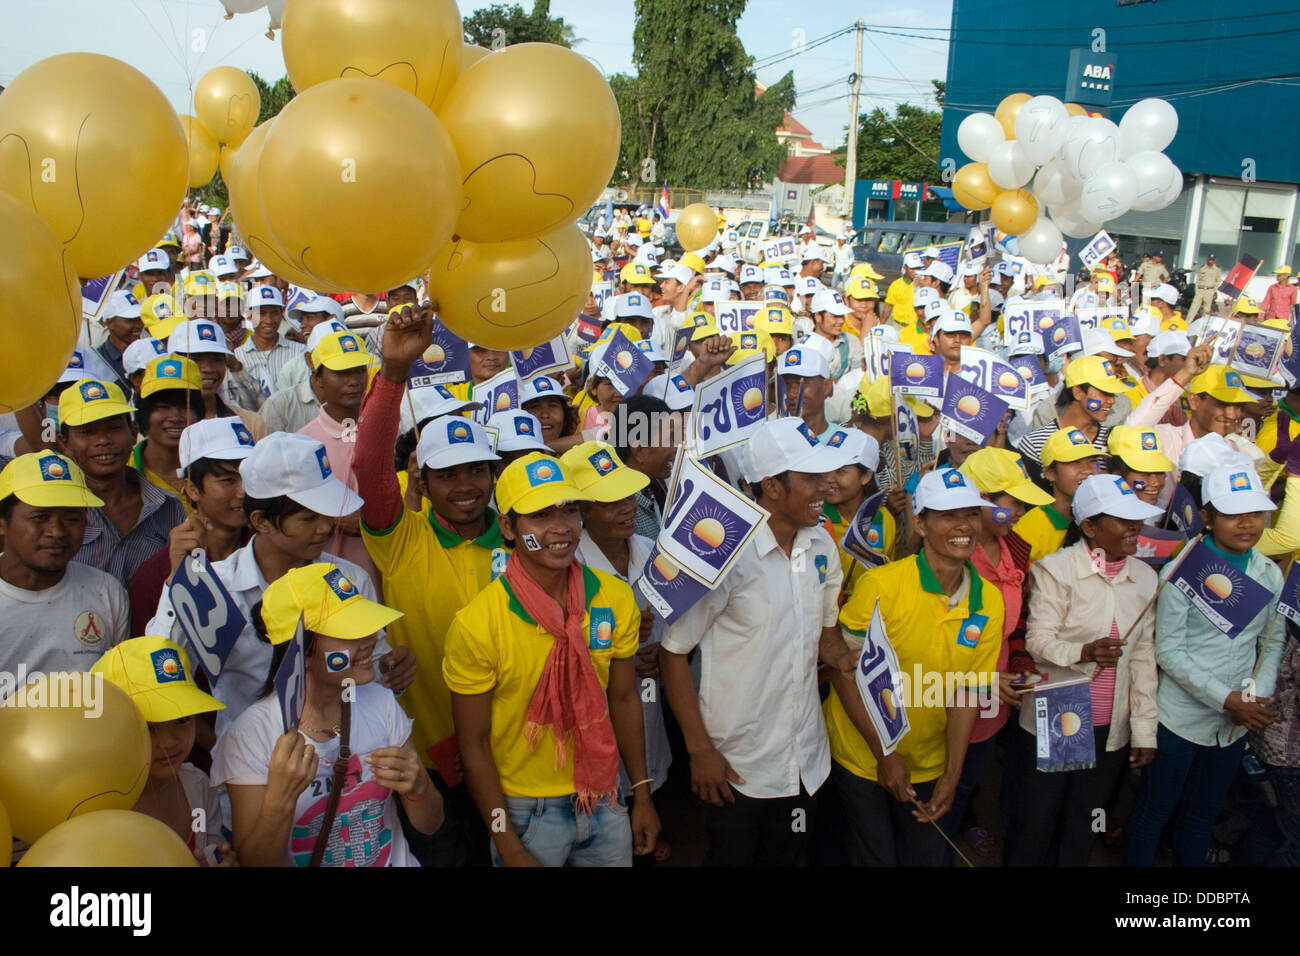 Personas con carteles, pancartas y globos están reunidos en un mitin de campaña electoral en Kampong Cham, Camboya. Foto de stock